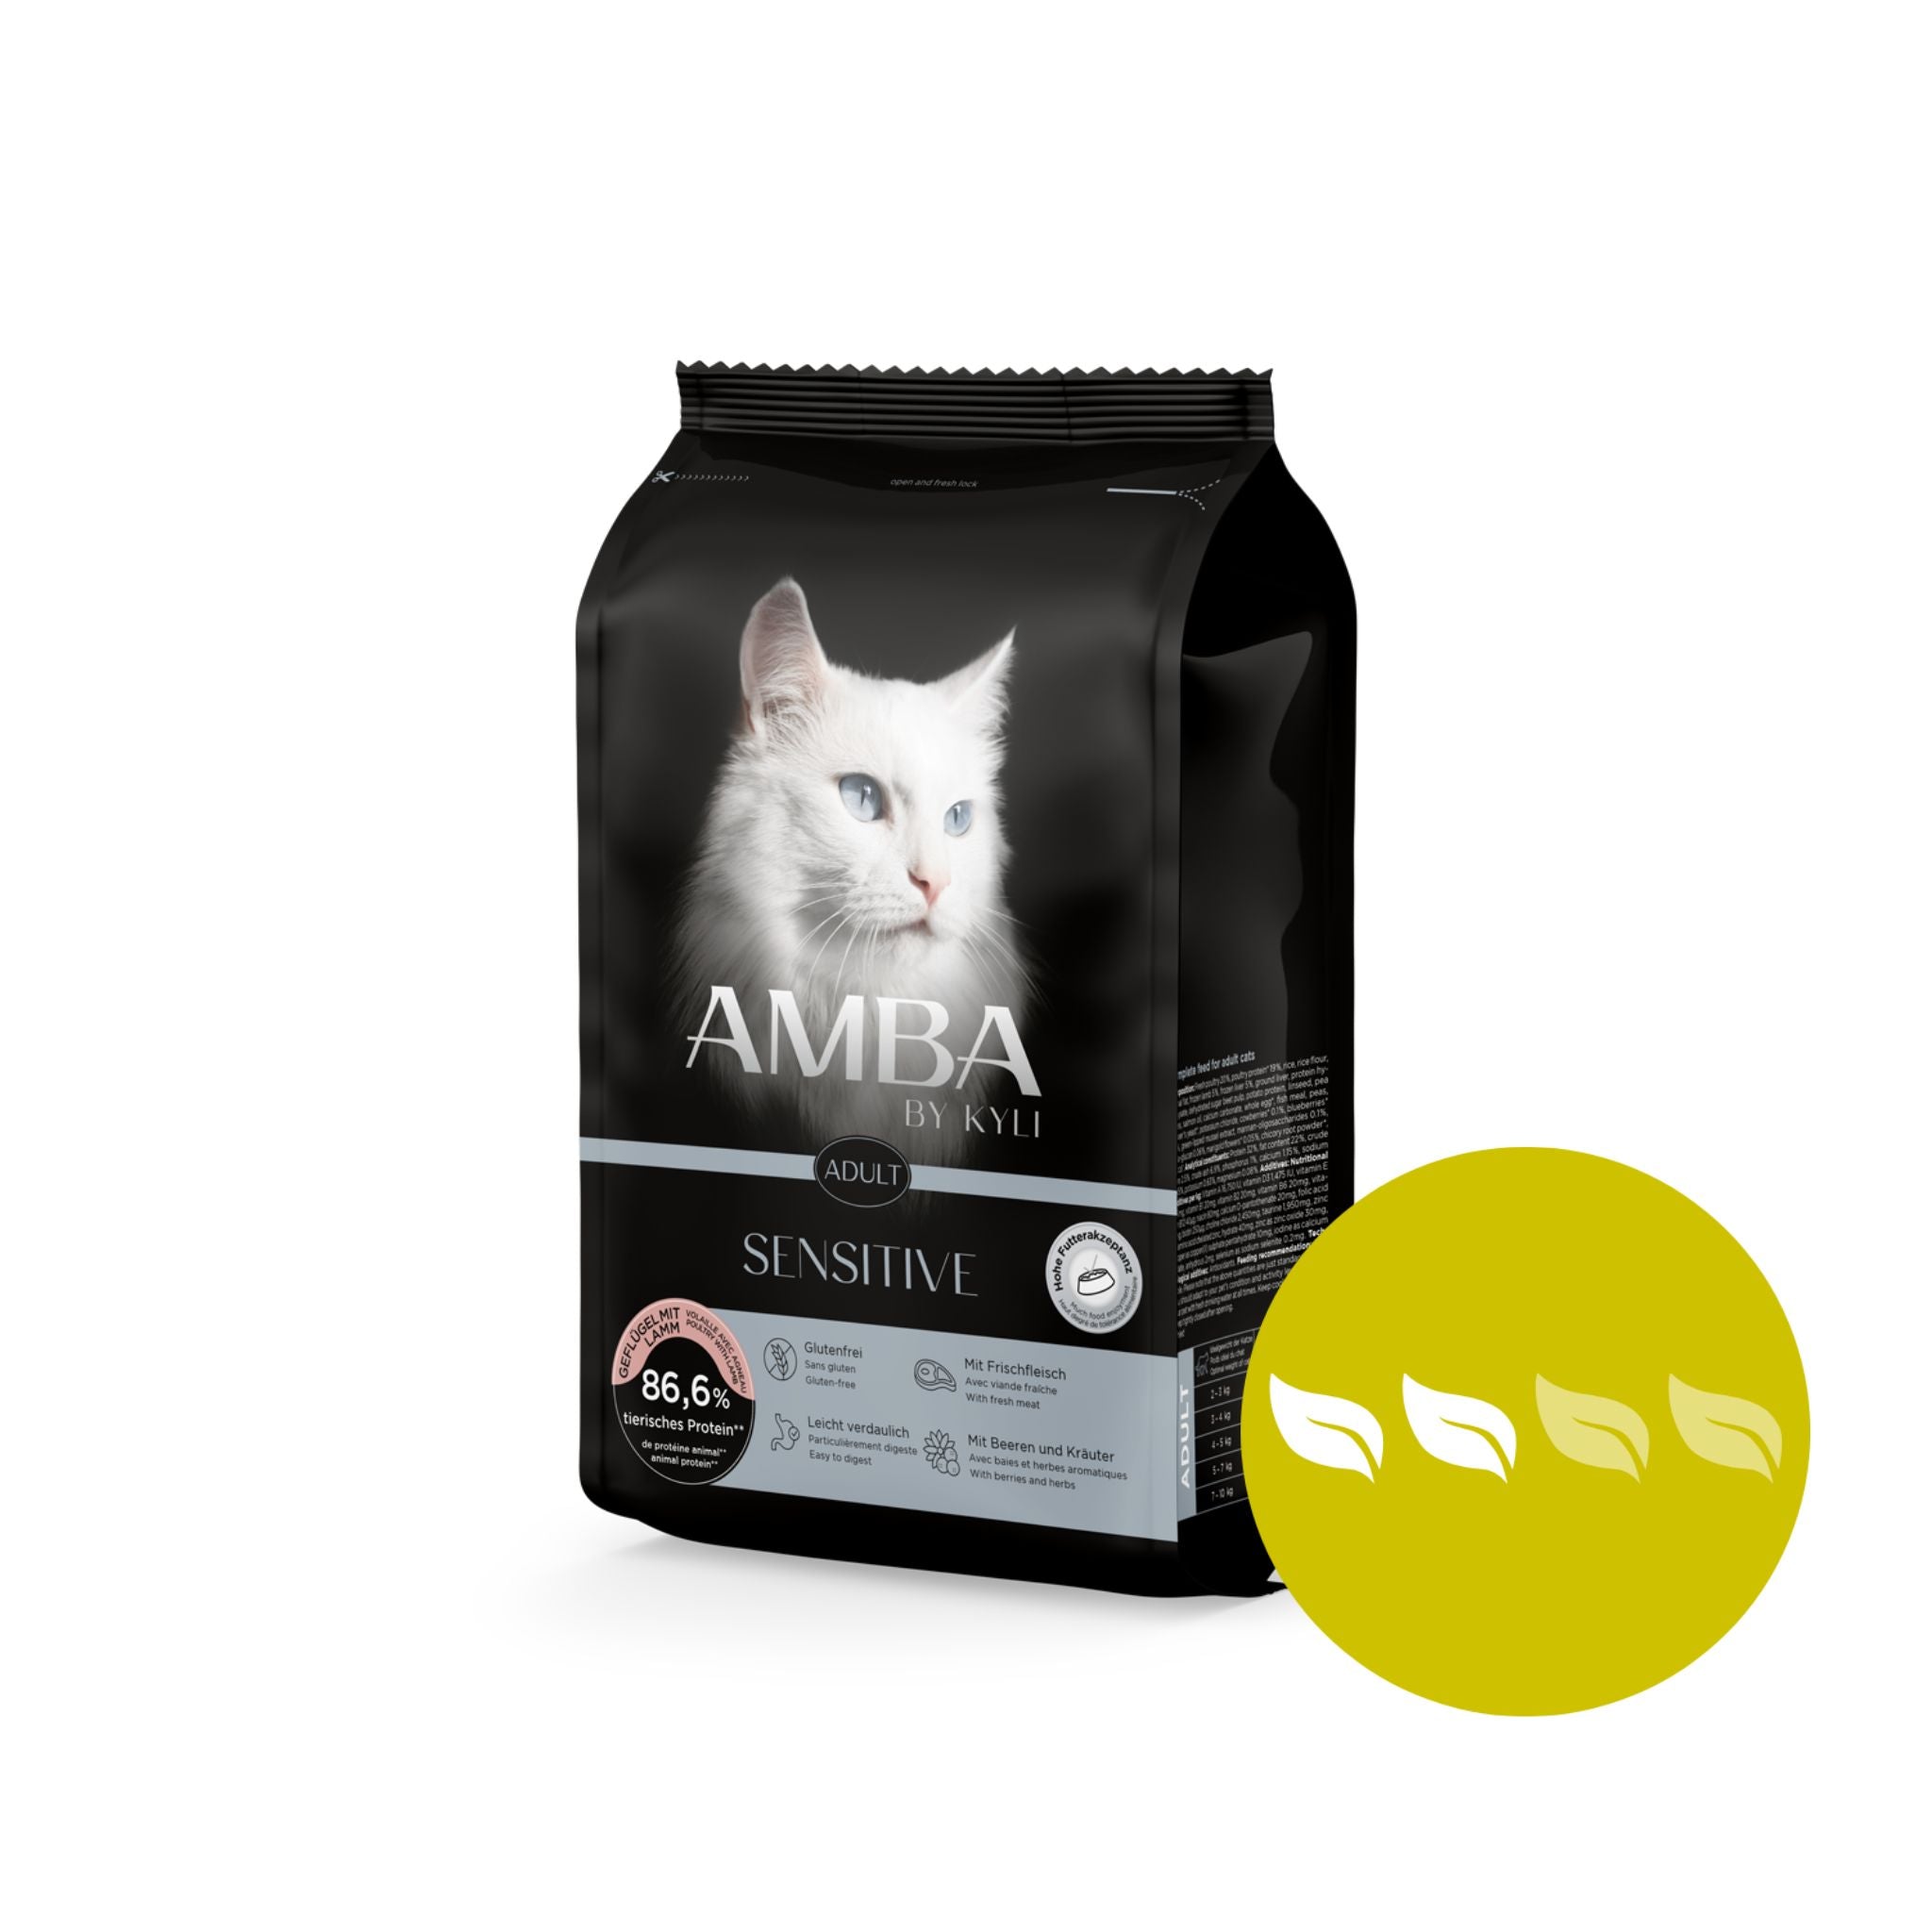 Artikel mit dem Namen AMBA by kyli Sensitive im Shop von zoo.de , dem Onlineshop für nachhaltiges Hundefutter und Katzenfutter.